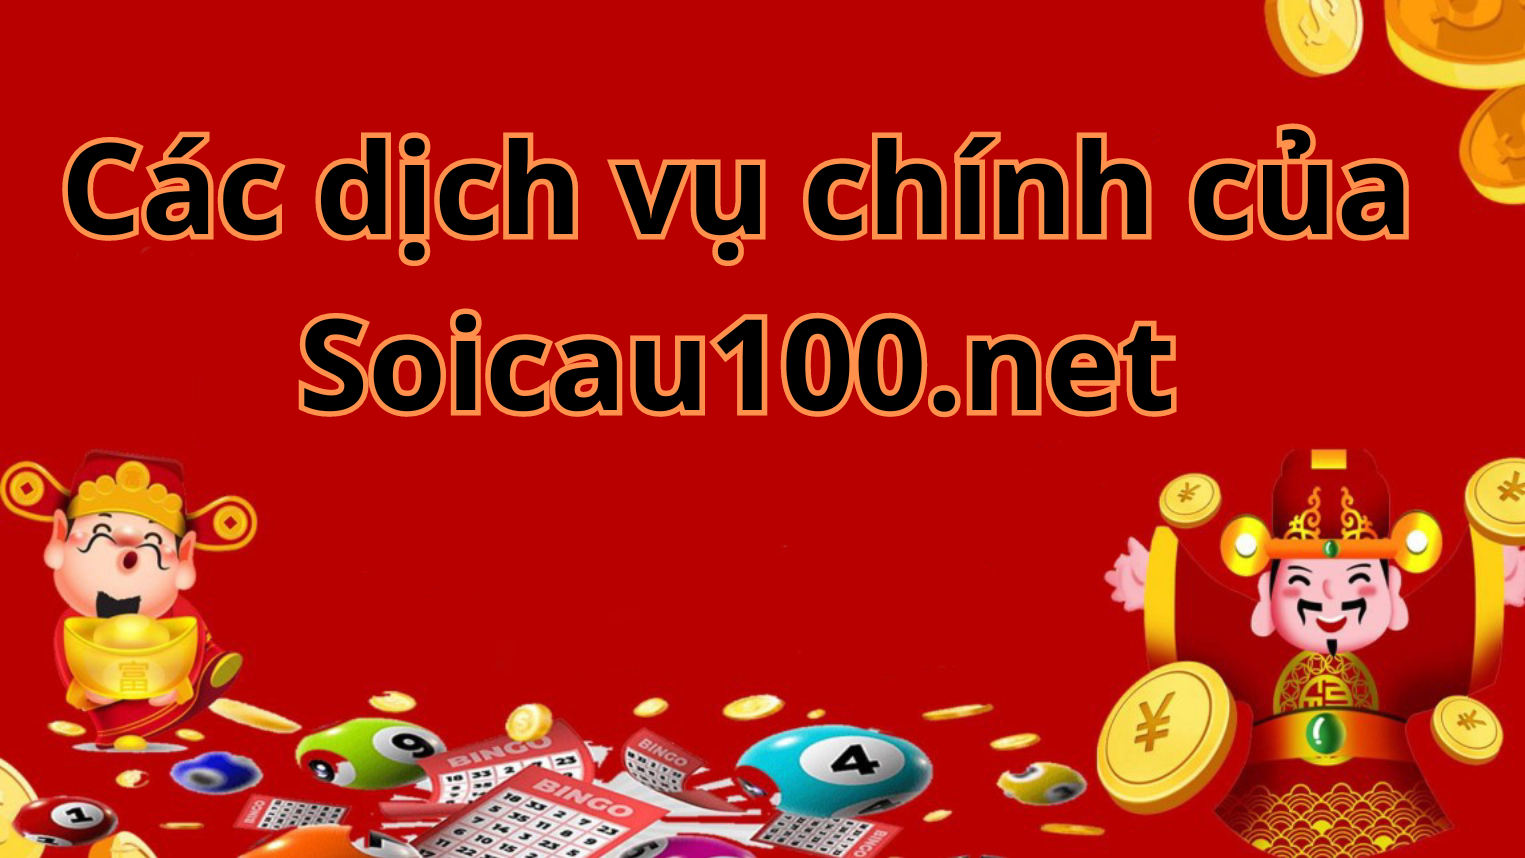 Các dịch vụ chính của Soicau100.net